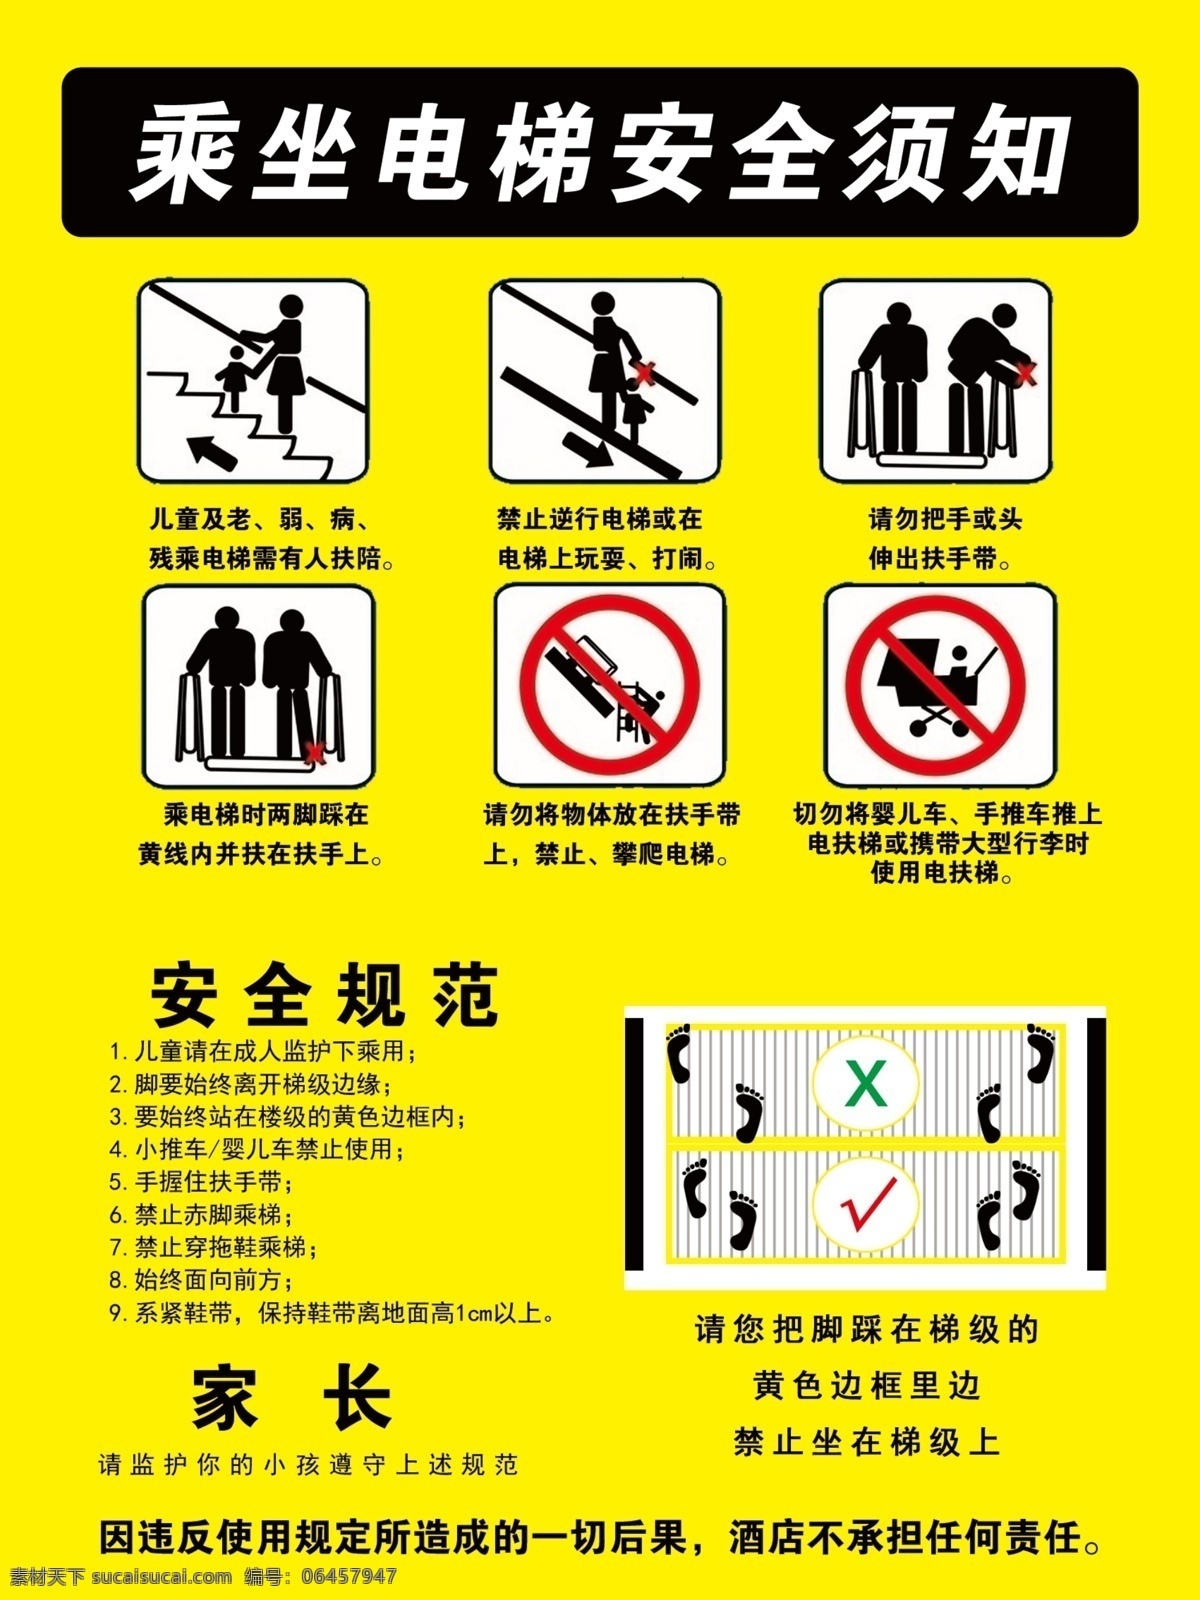 乘坐 电梯 安全 须知 安全规范 电梯标识 攀爬电梯 电扶梯 展板模板 广告设计模板 源文件